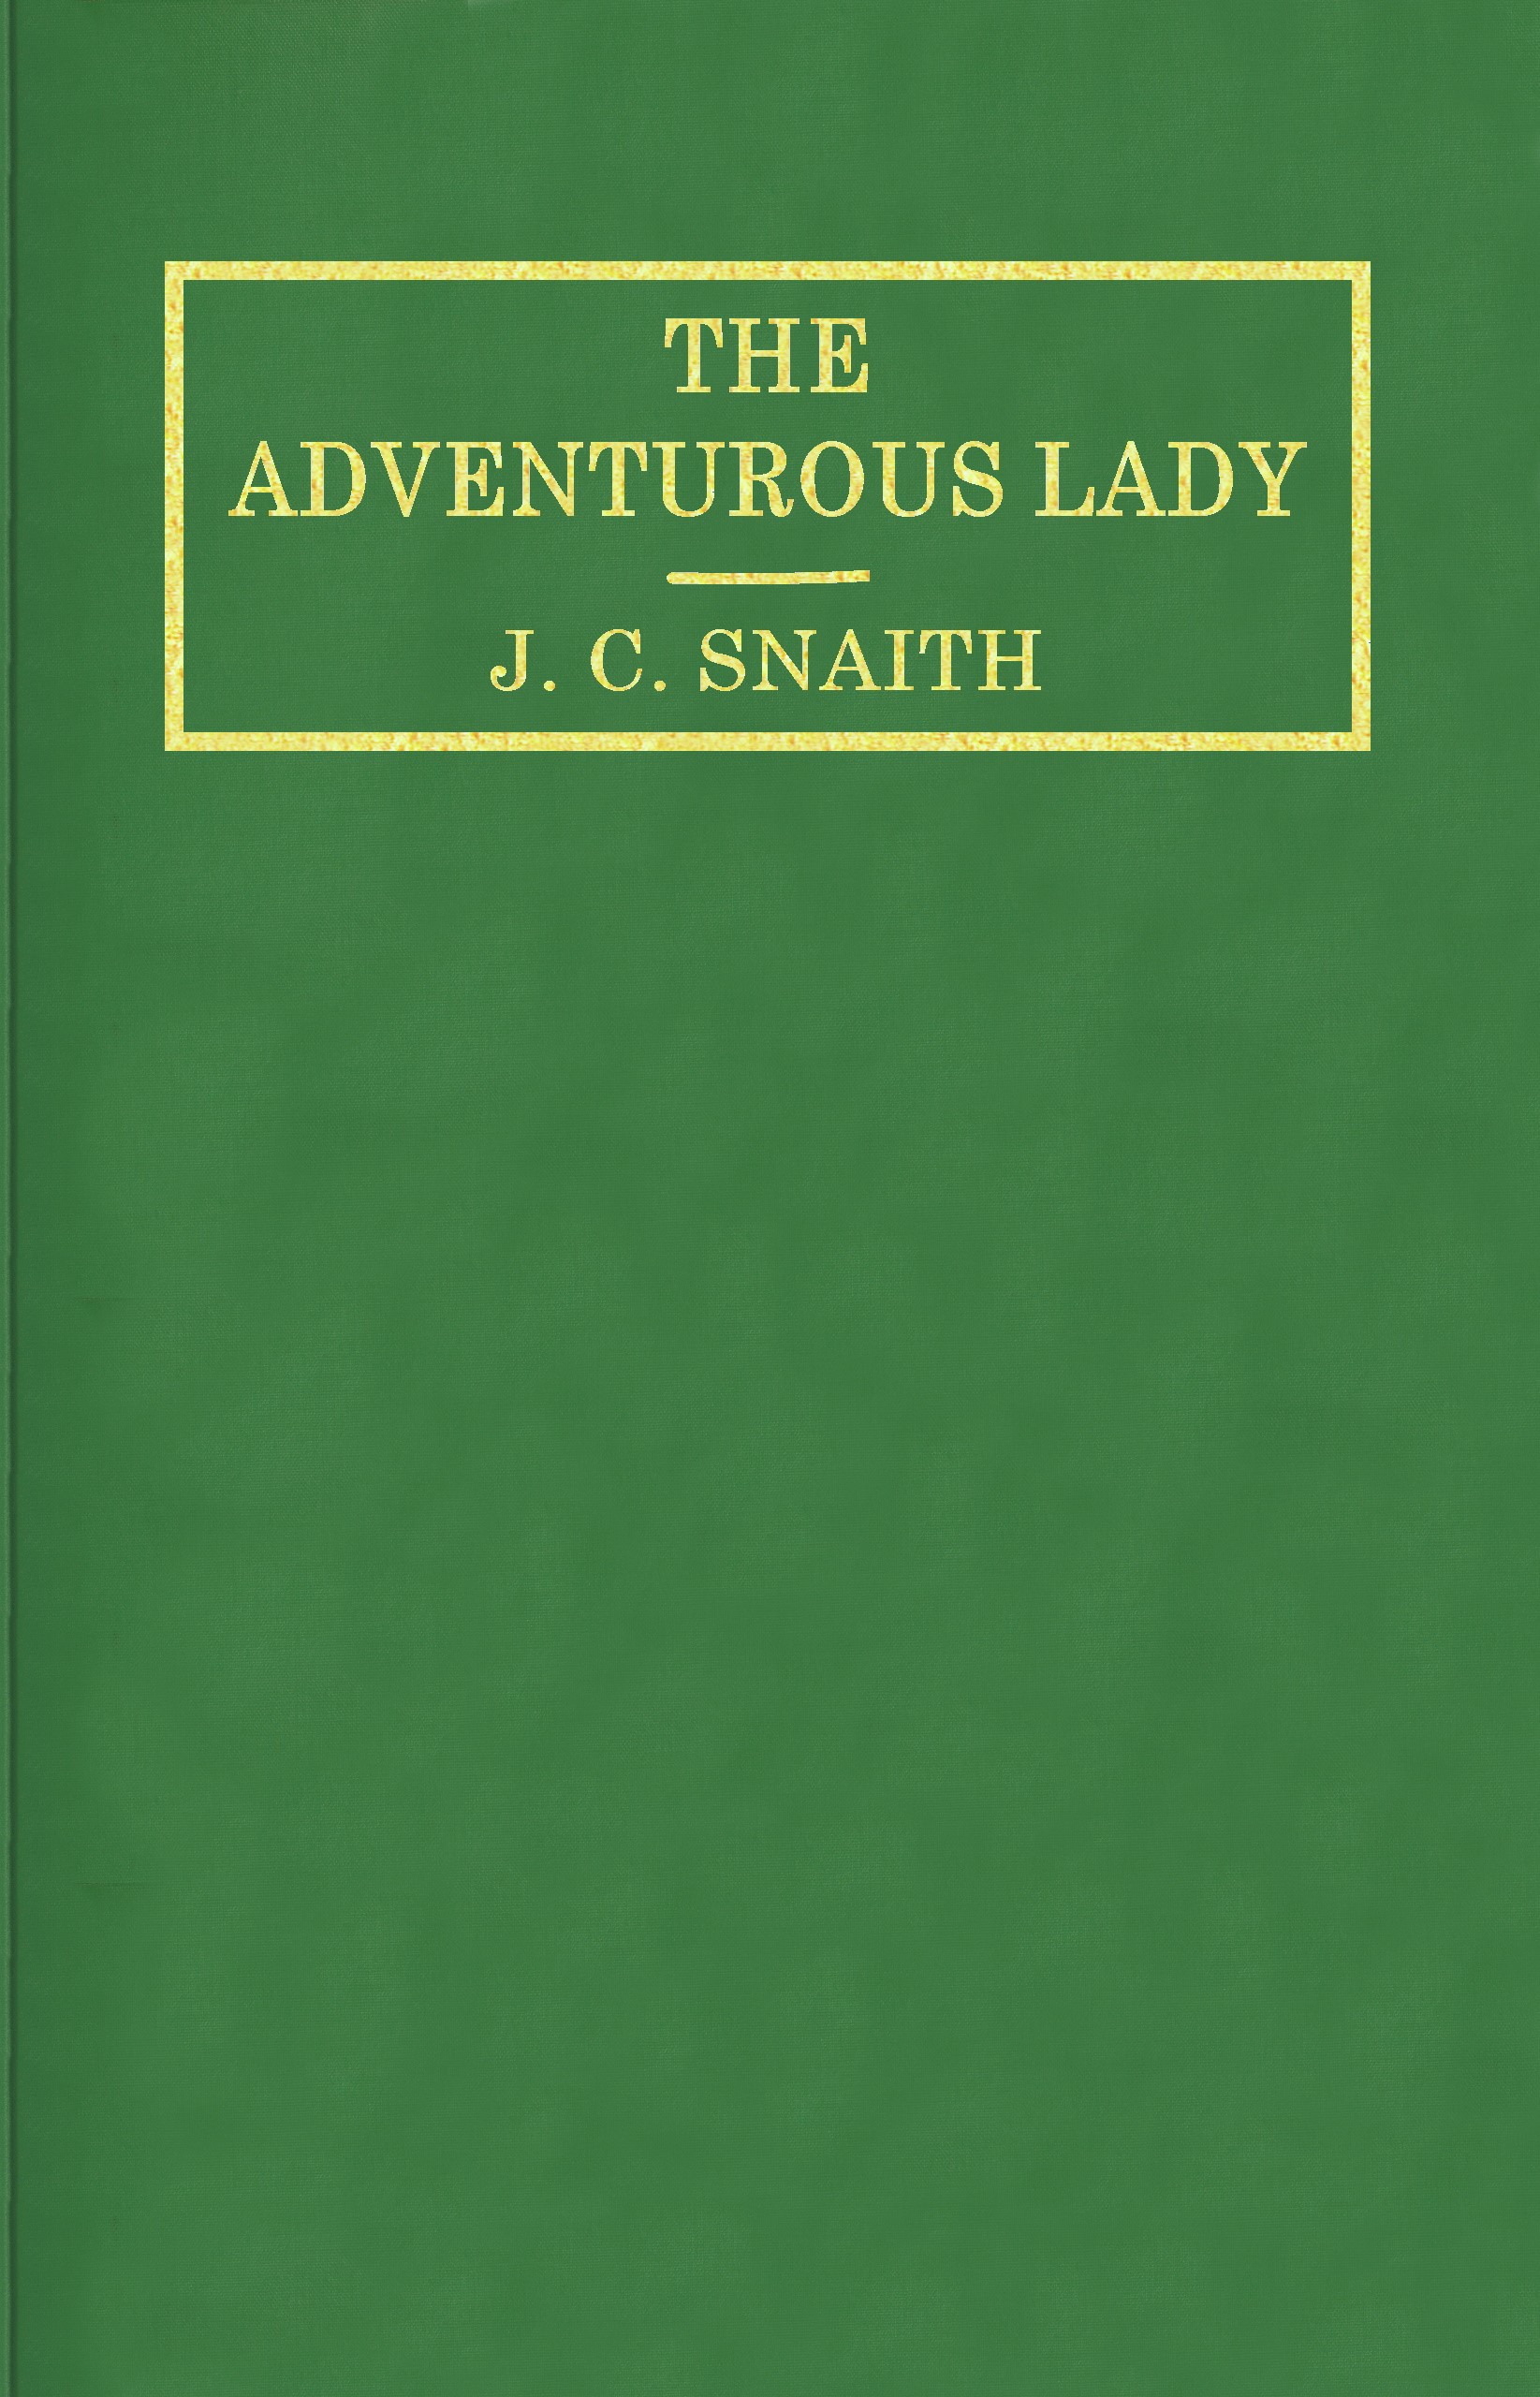 The adventurous lady